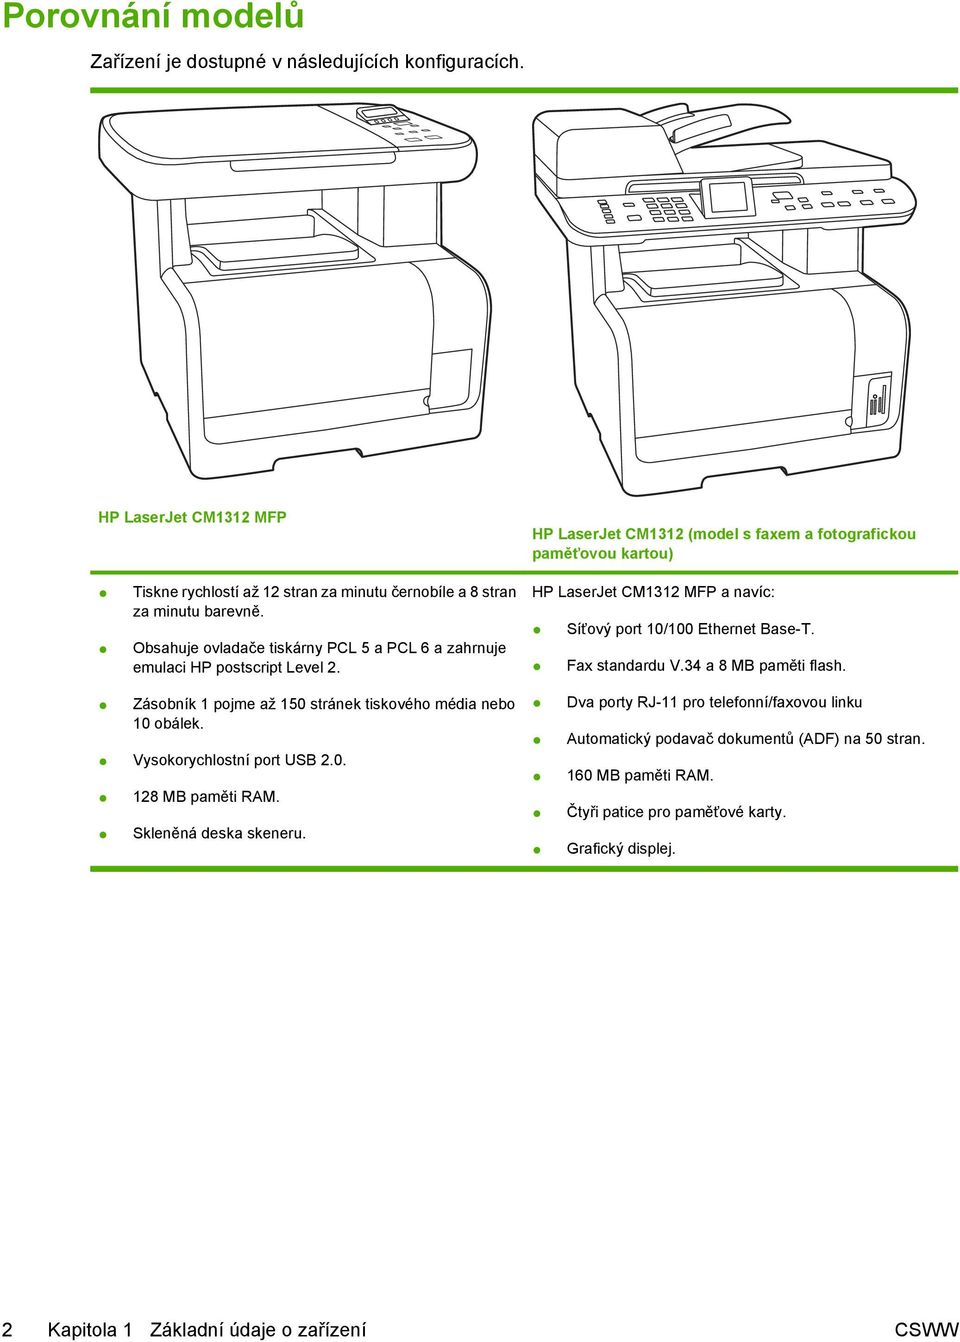 Skleněná deska skeneru. HP LaserJet CM1312 (model s faxem a fotografickou paměťovou kartou) HP LaserJet CM1312 MFP a navíc: Síťový port 10/100 Ethernet Base-T. Fax standardu V.